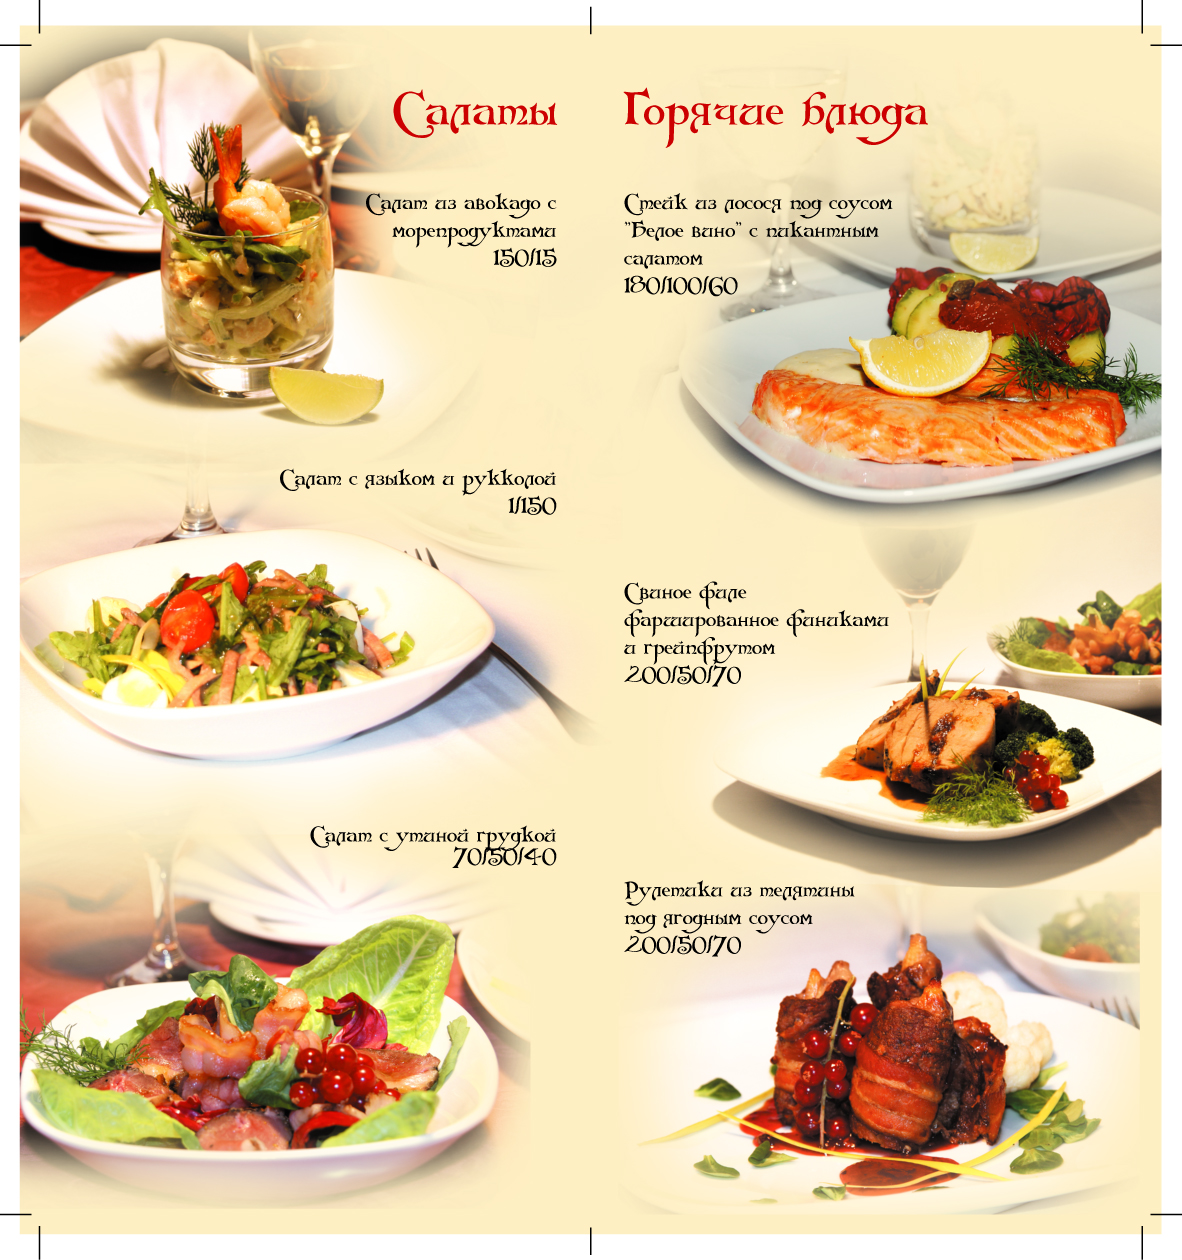 Ресторан славянский меню